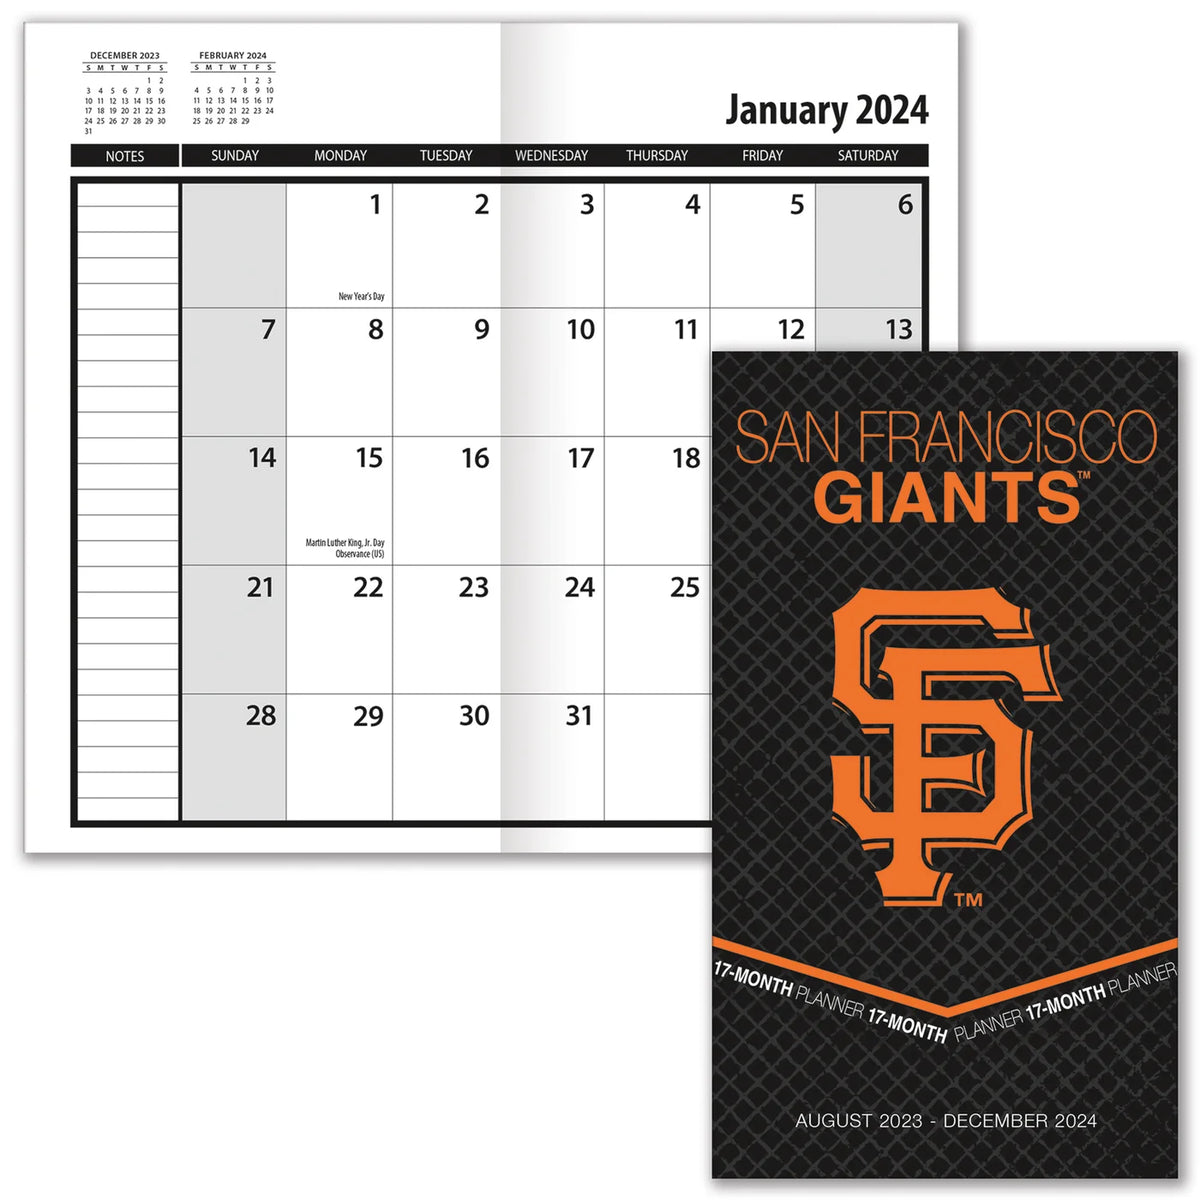 San Francisco Giants Schedule